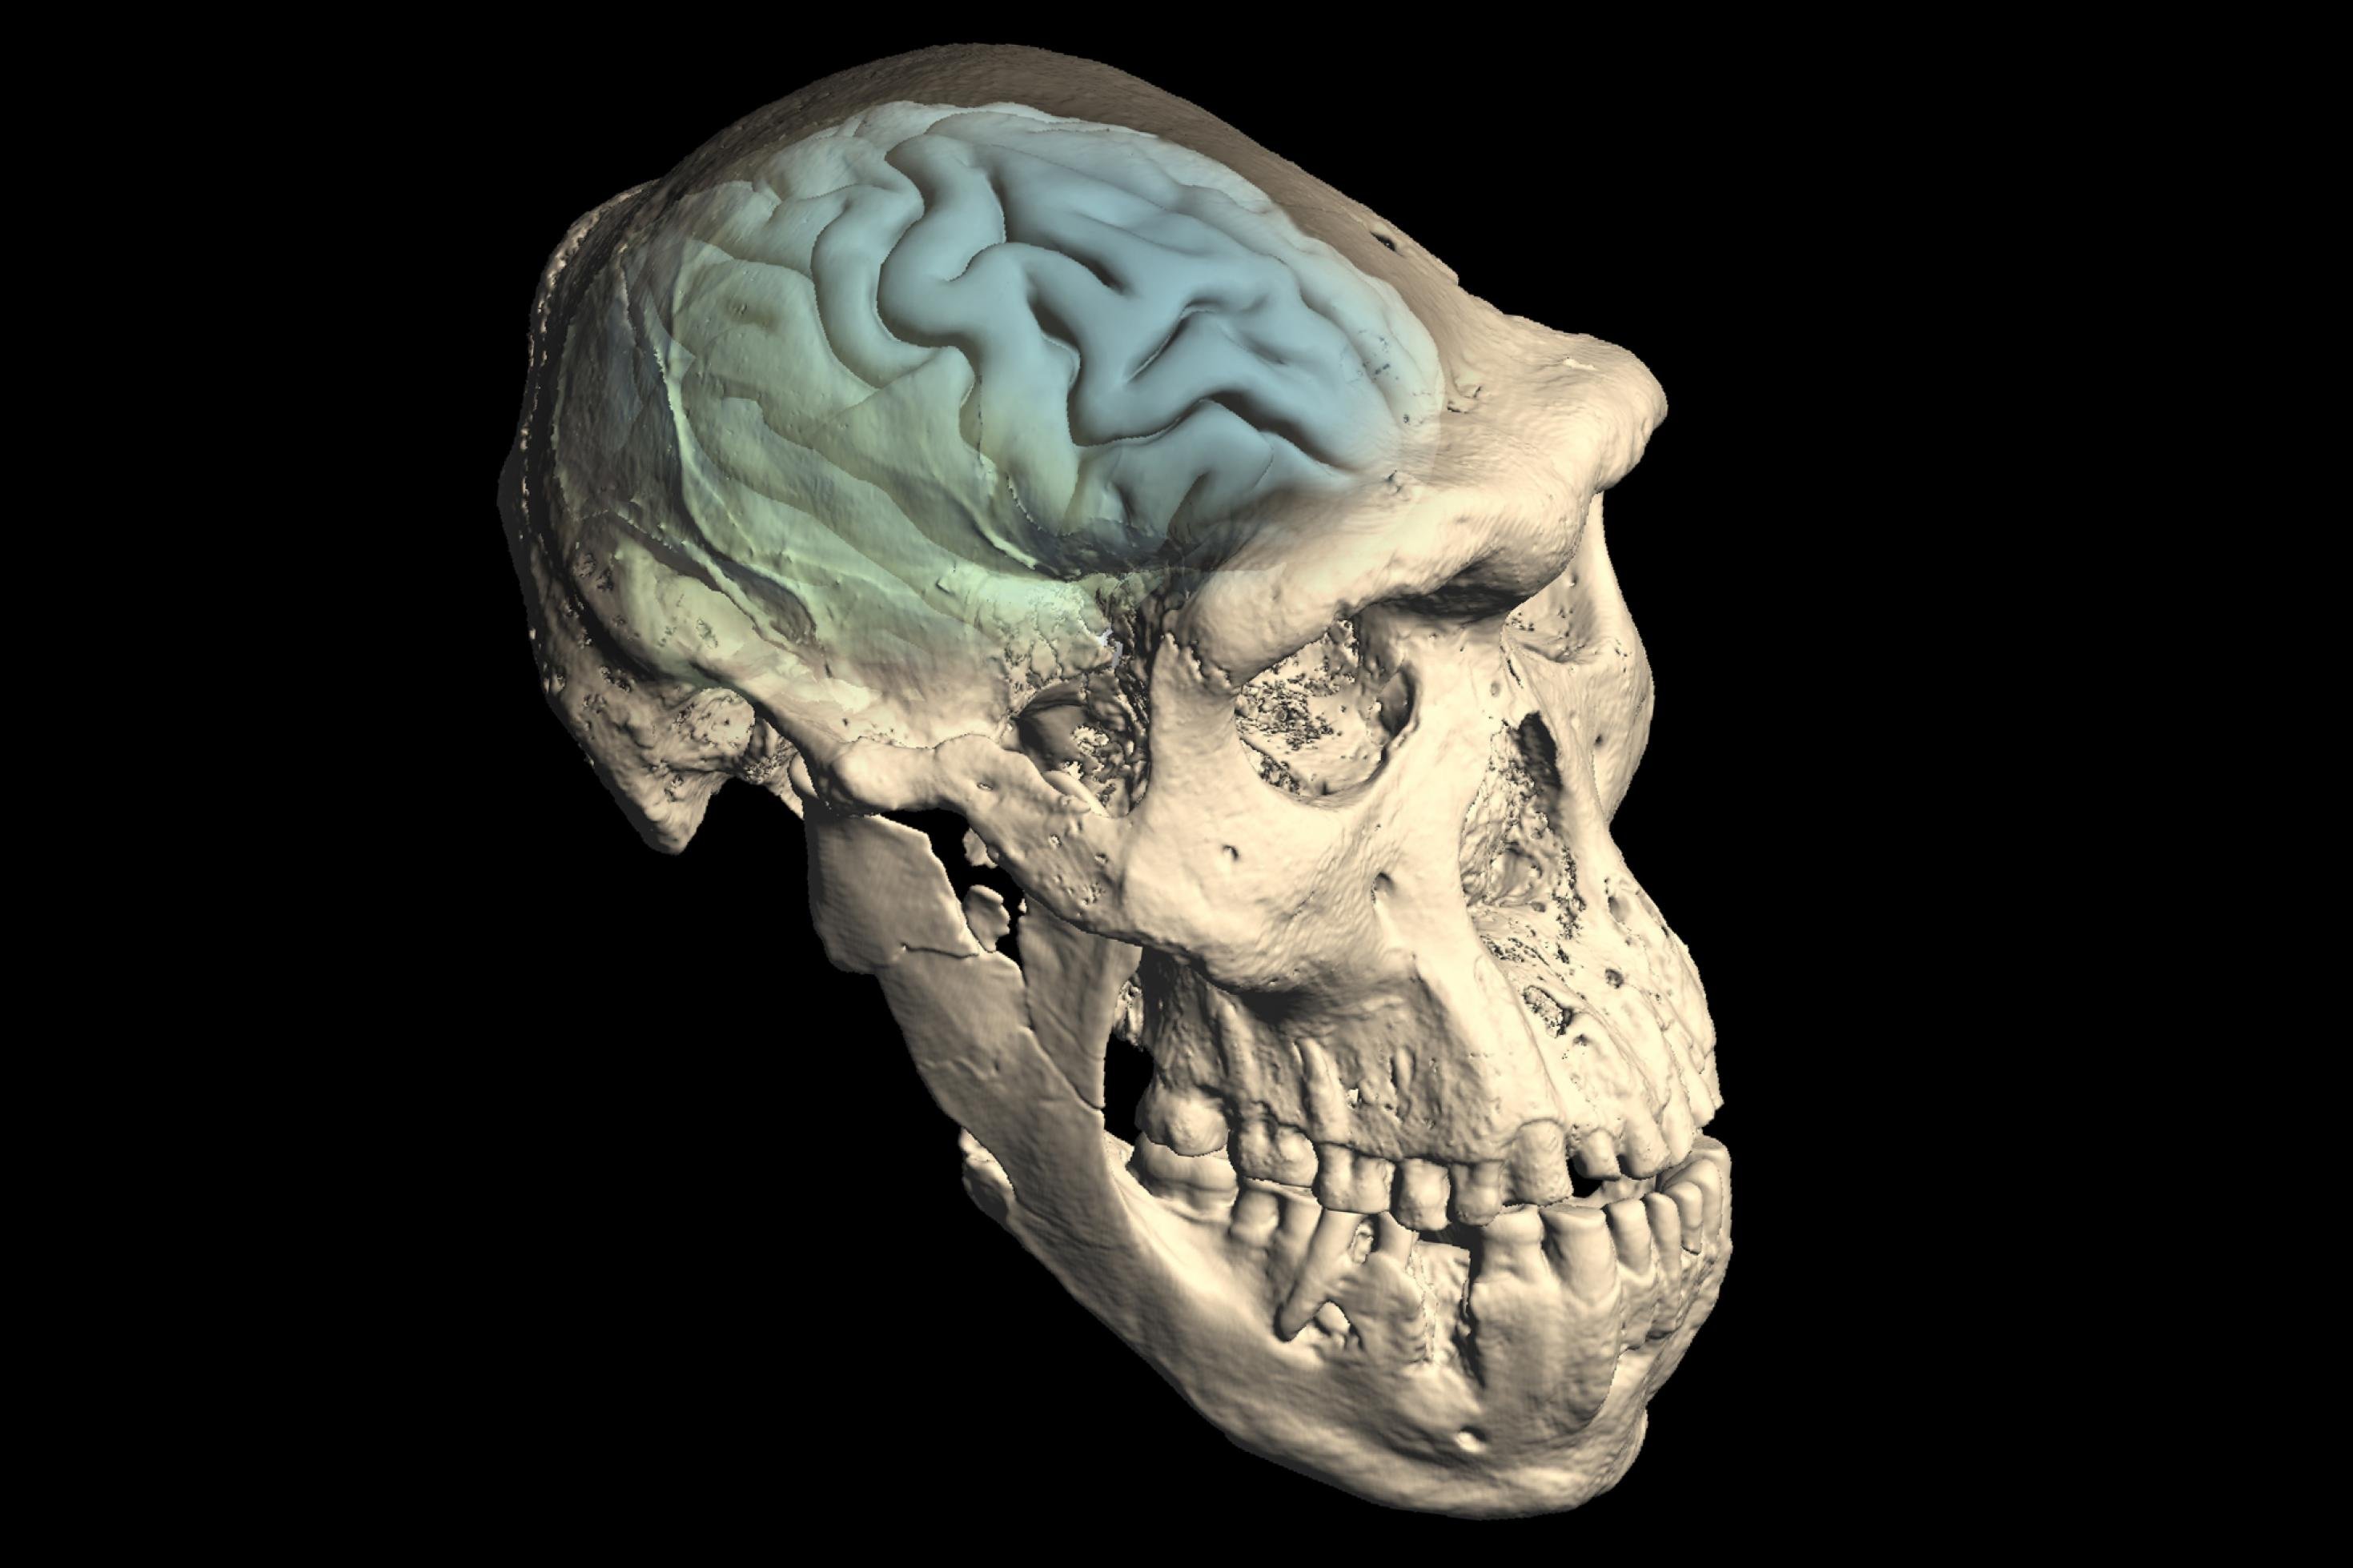 Das computertomografische Bild zeigt einen elfenbeinfarbenen Urmenschenschädel mit kräftigem Kinn, vorstehender Schnauze und mächtigen Knochenwülsten über den Augen. In blauen und grünen Tönen eingezeichnet ist das Gehirn, das – nach Analysen von Forschenden der Universität Zürich – noch relativ primitiv strukturiert war.